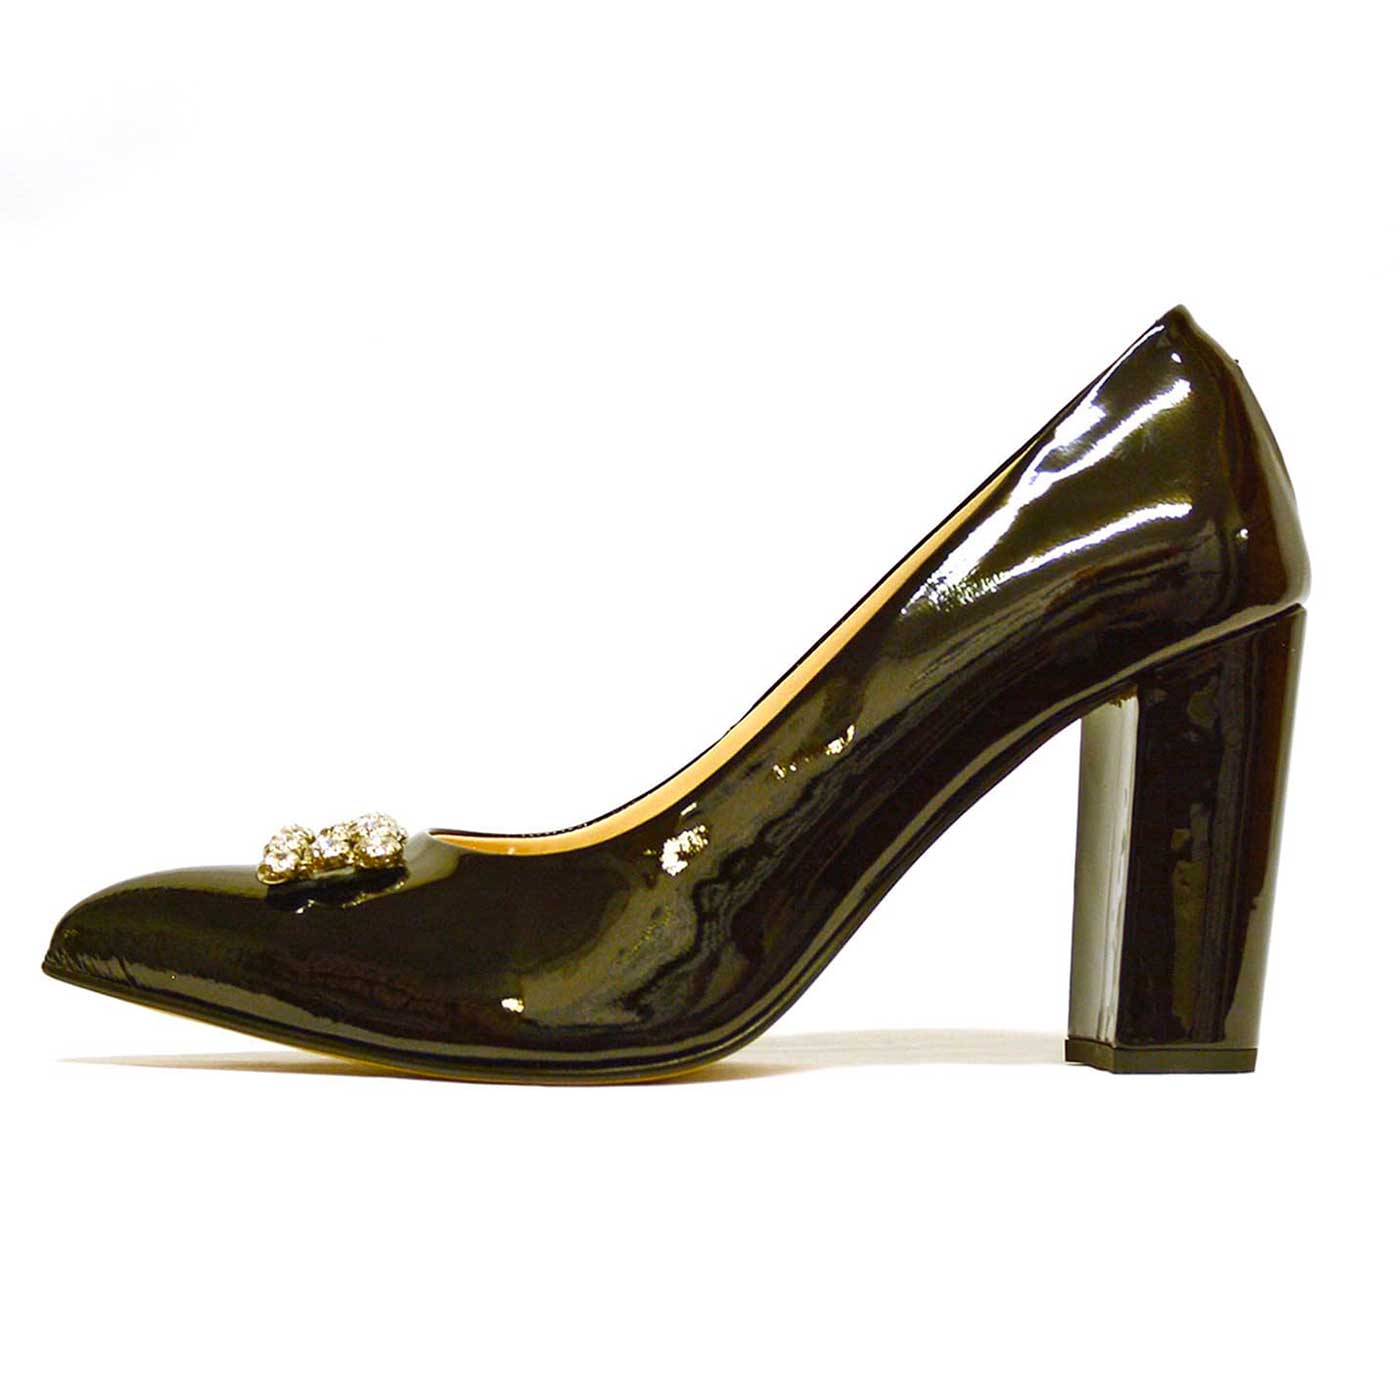 escarpins vernis noir, chaussures femme grande taille